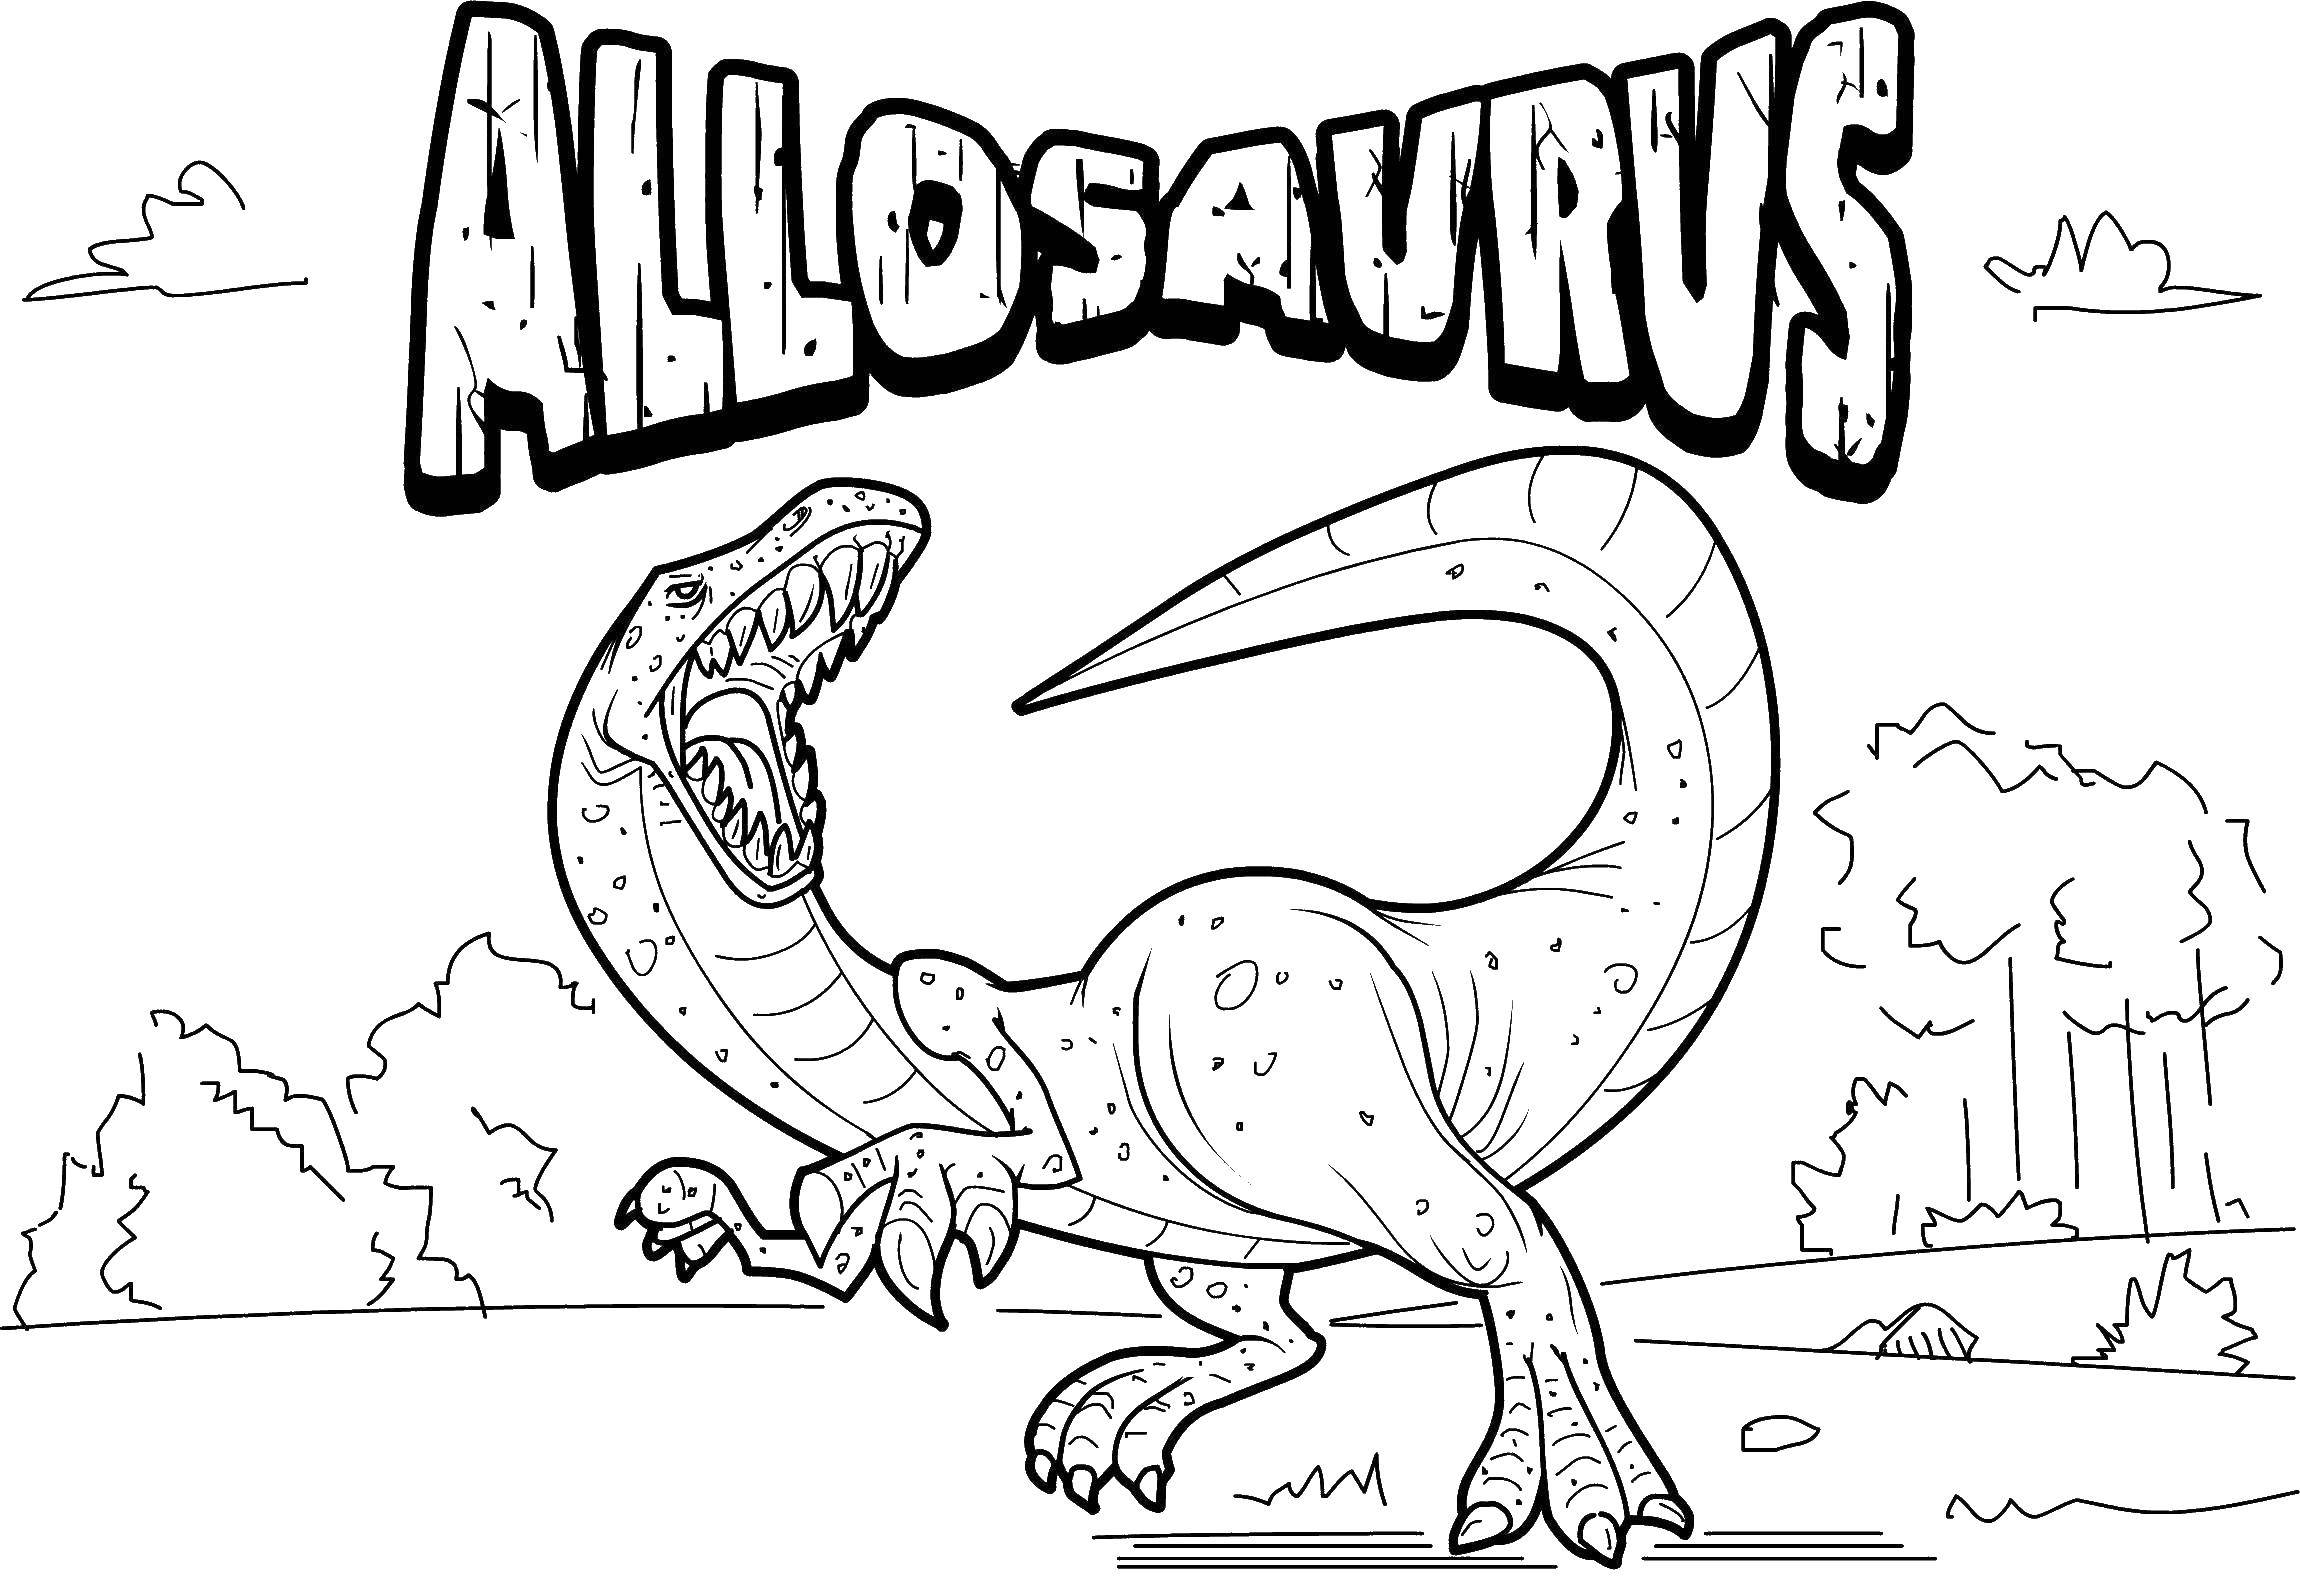 Coloring A huge allosaurus. Category dinosaur. Tags:  Dinosaurs, Allosaurus.